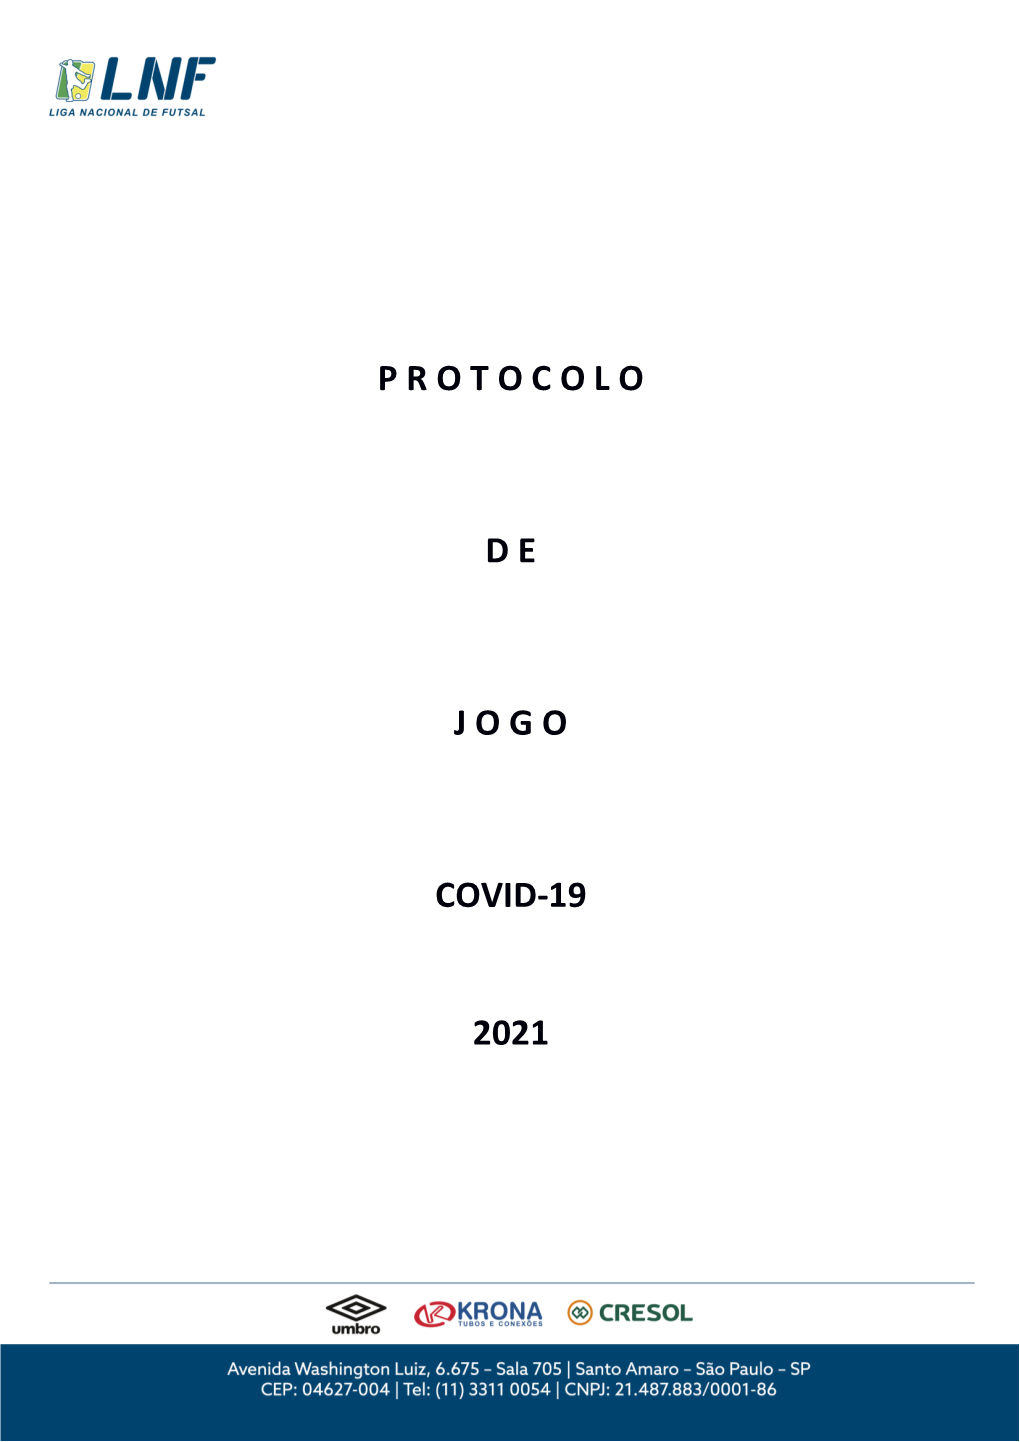 P R O T O C O L O D E J O G O Covid-19 2021